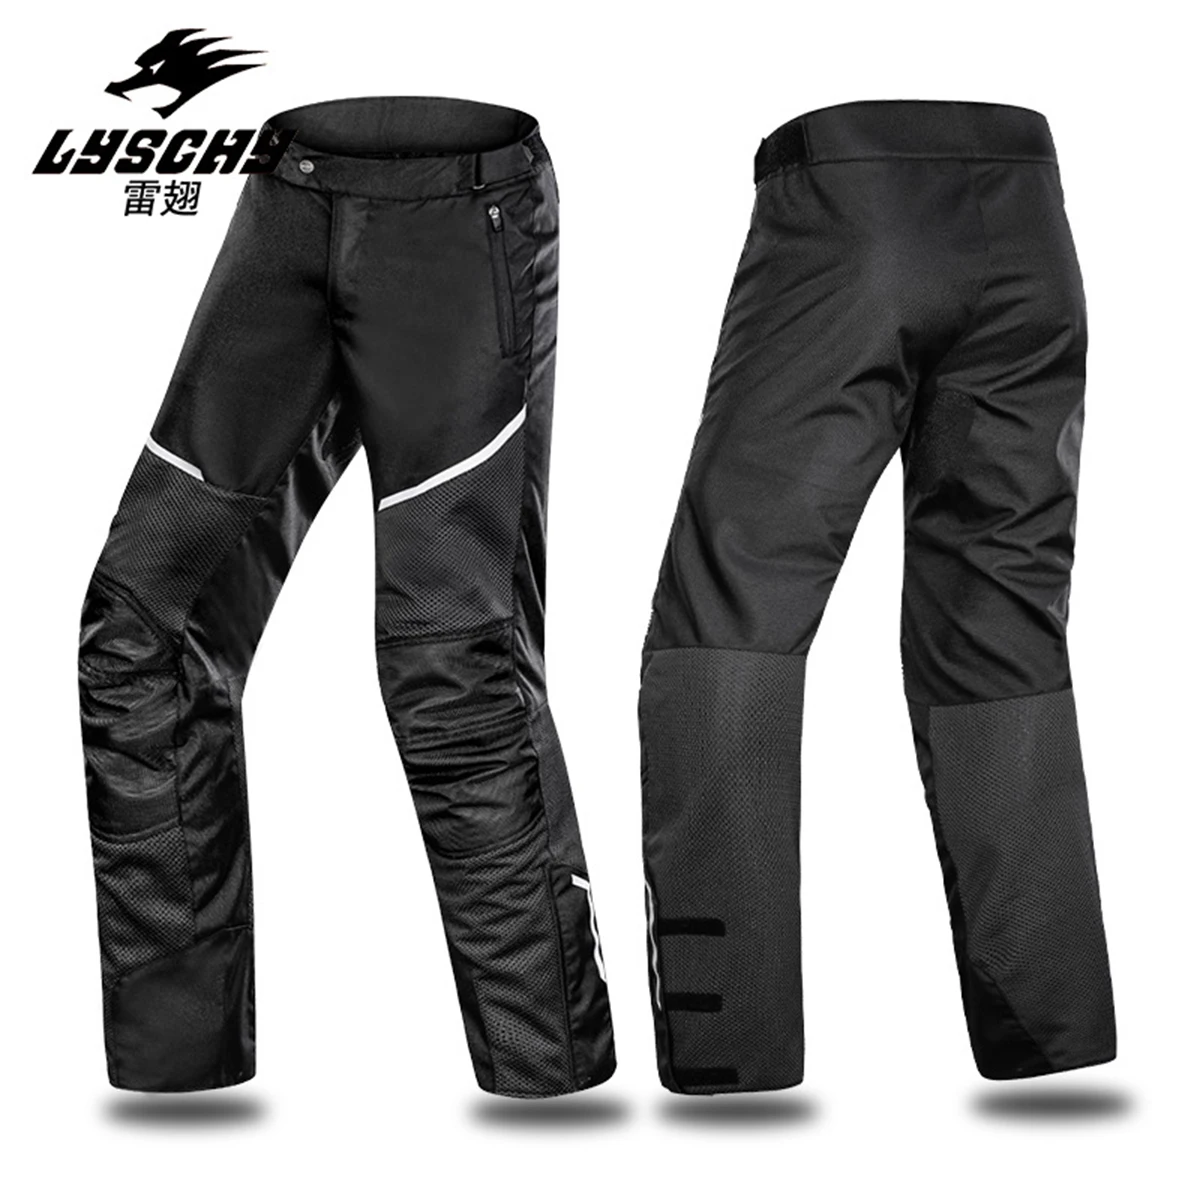 

Мотоциклетные брюки LYSCHY для мужчин, водонепроницаемые защитные брюки для мотокросса, для езды по бездорожью, светоотражающие дышащие, на лето